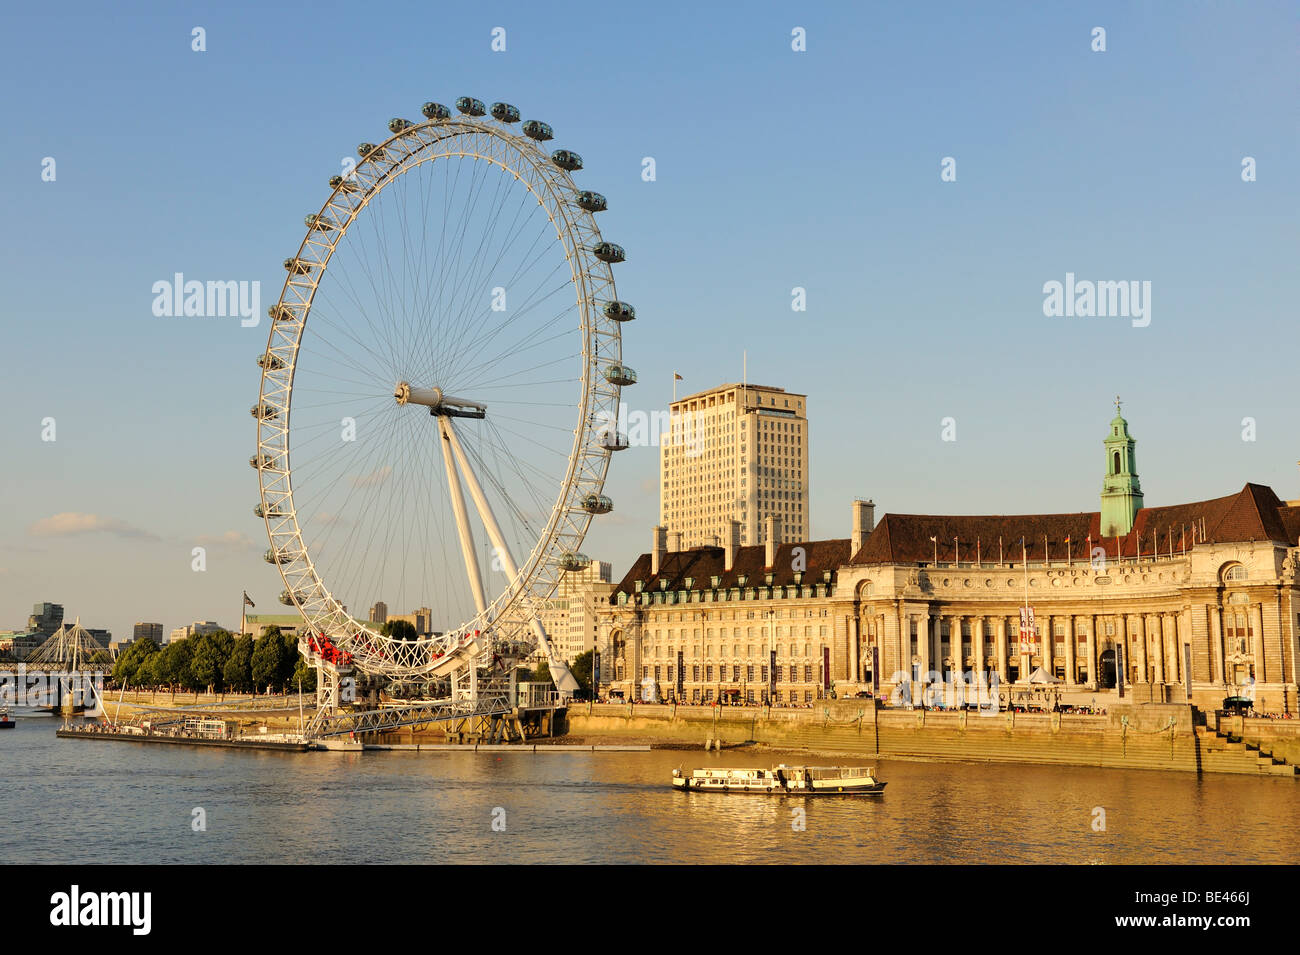 Vista sul Fiume Tamigi, a 135 metri di altezza il London Eye o Millennium Wheel, London, England, Regno Unito, Europa Foto Stock